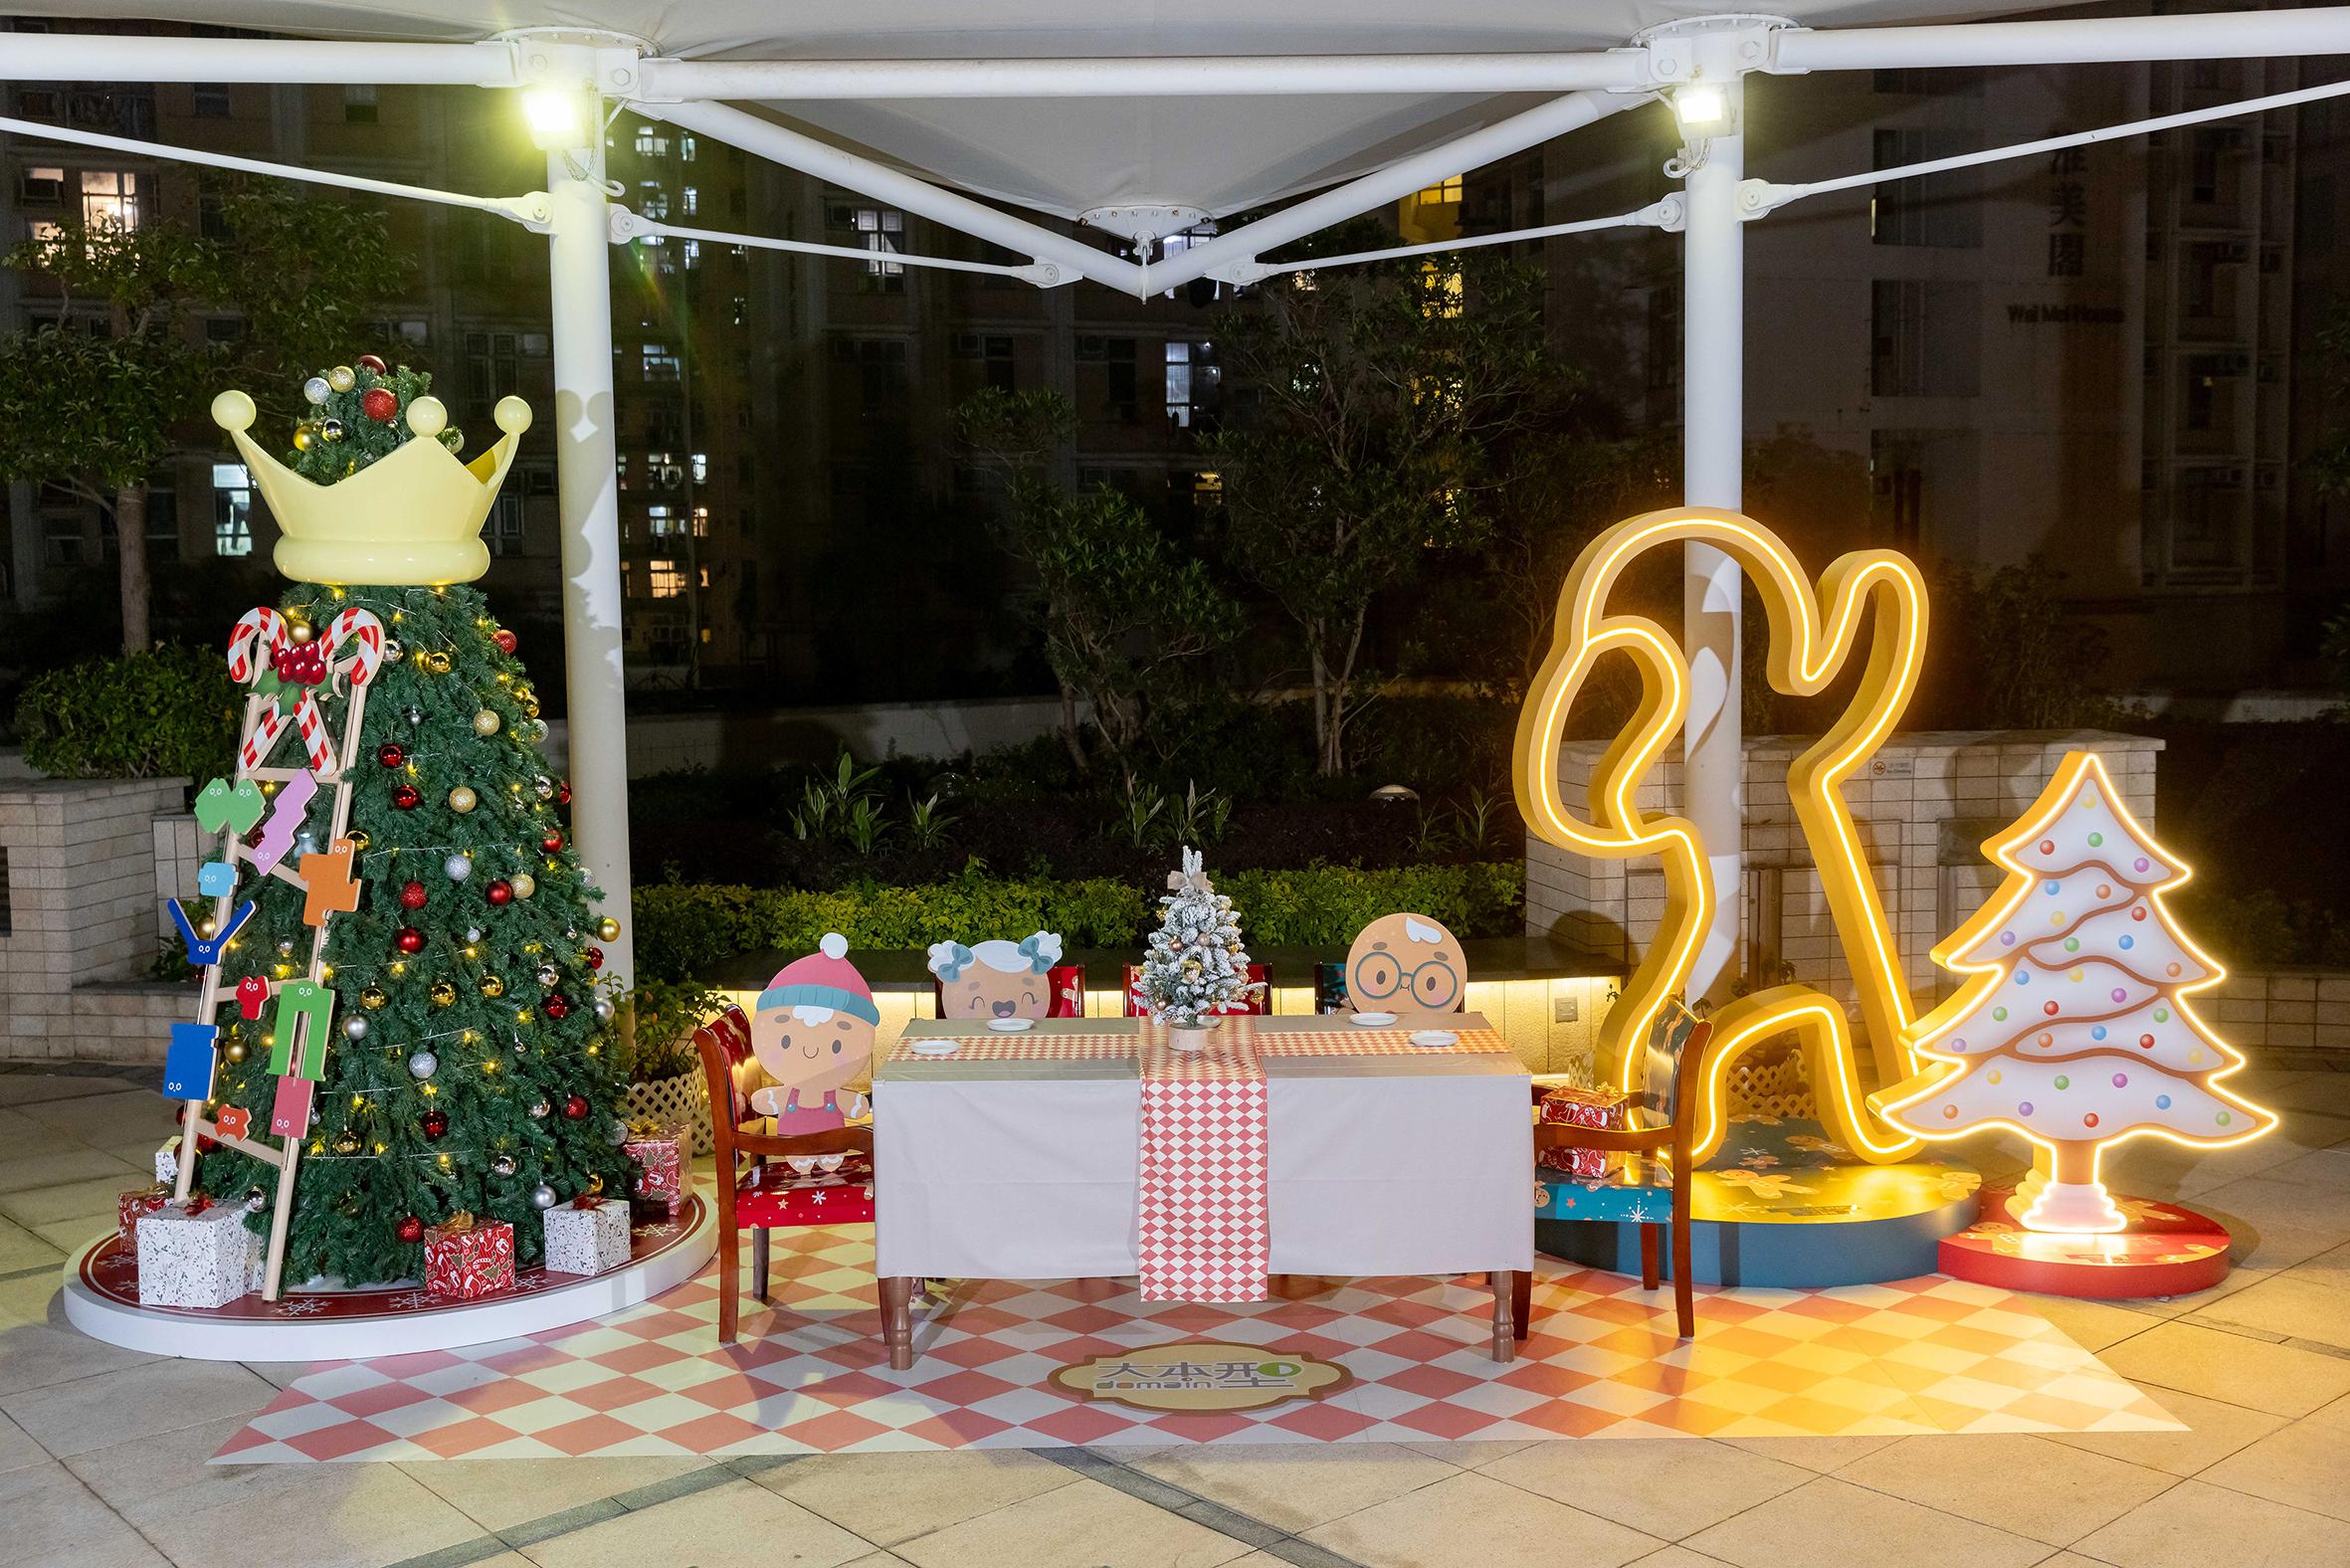 香港房屋委员会（房委会）于辖下多个商场举办圣诞节推广及夜缤纷活动，与市民欢度圣诞。图示房委会位于油塘的区域商场大本型于空中花园的姜饼人模具圣诞装饰。